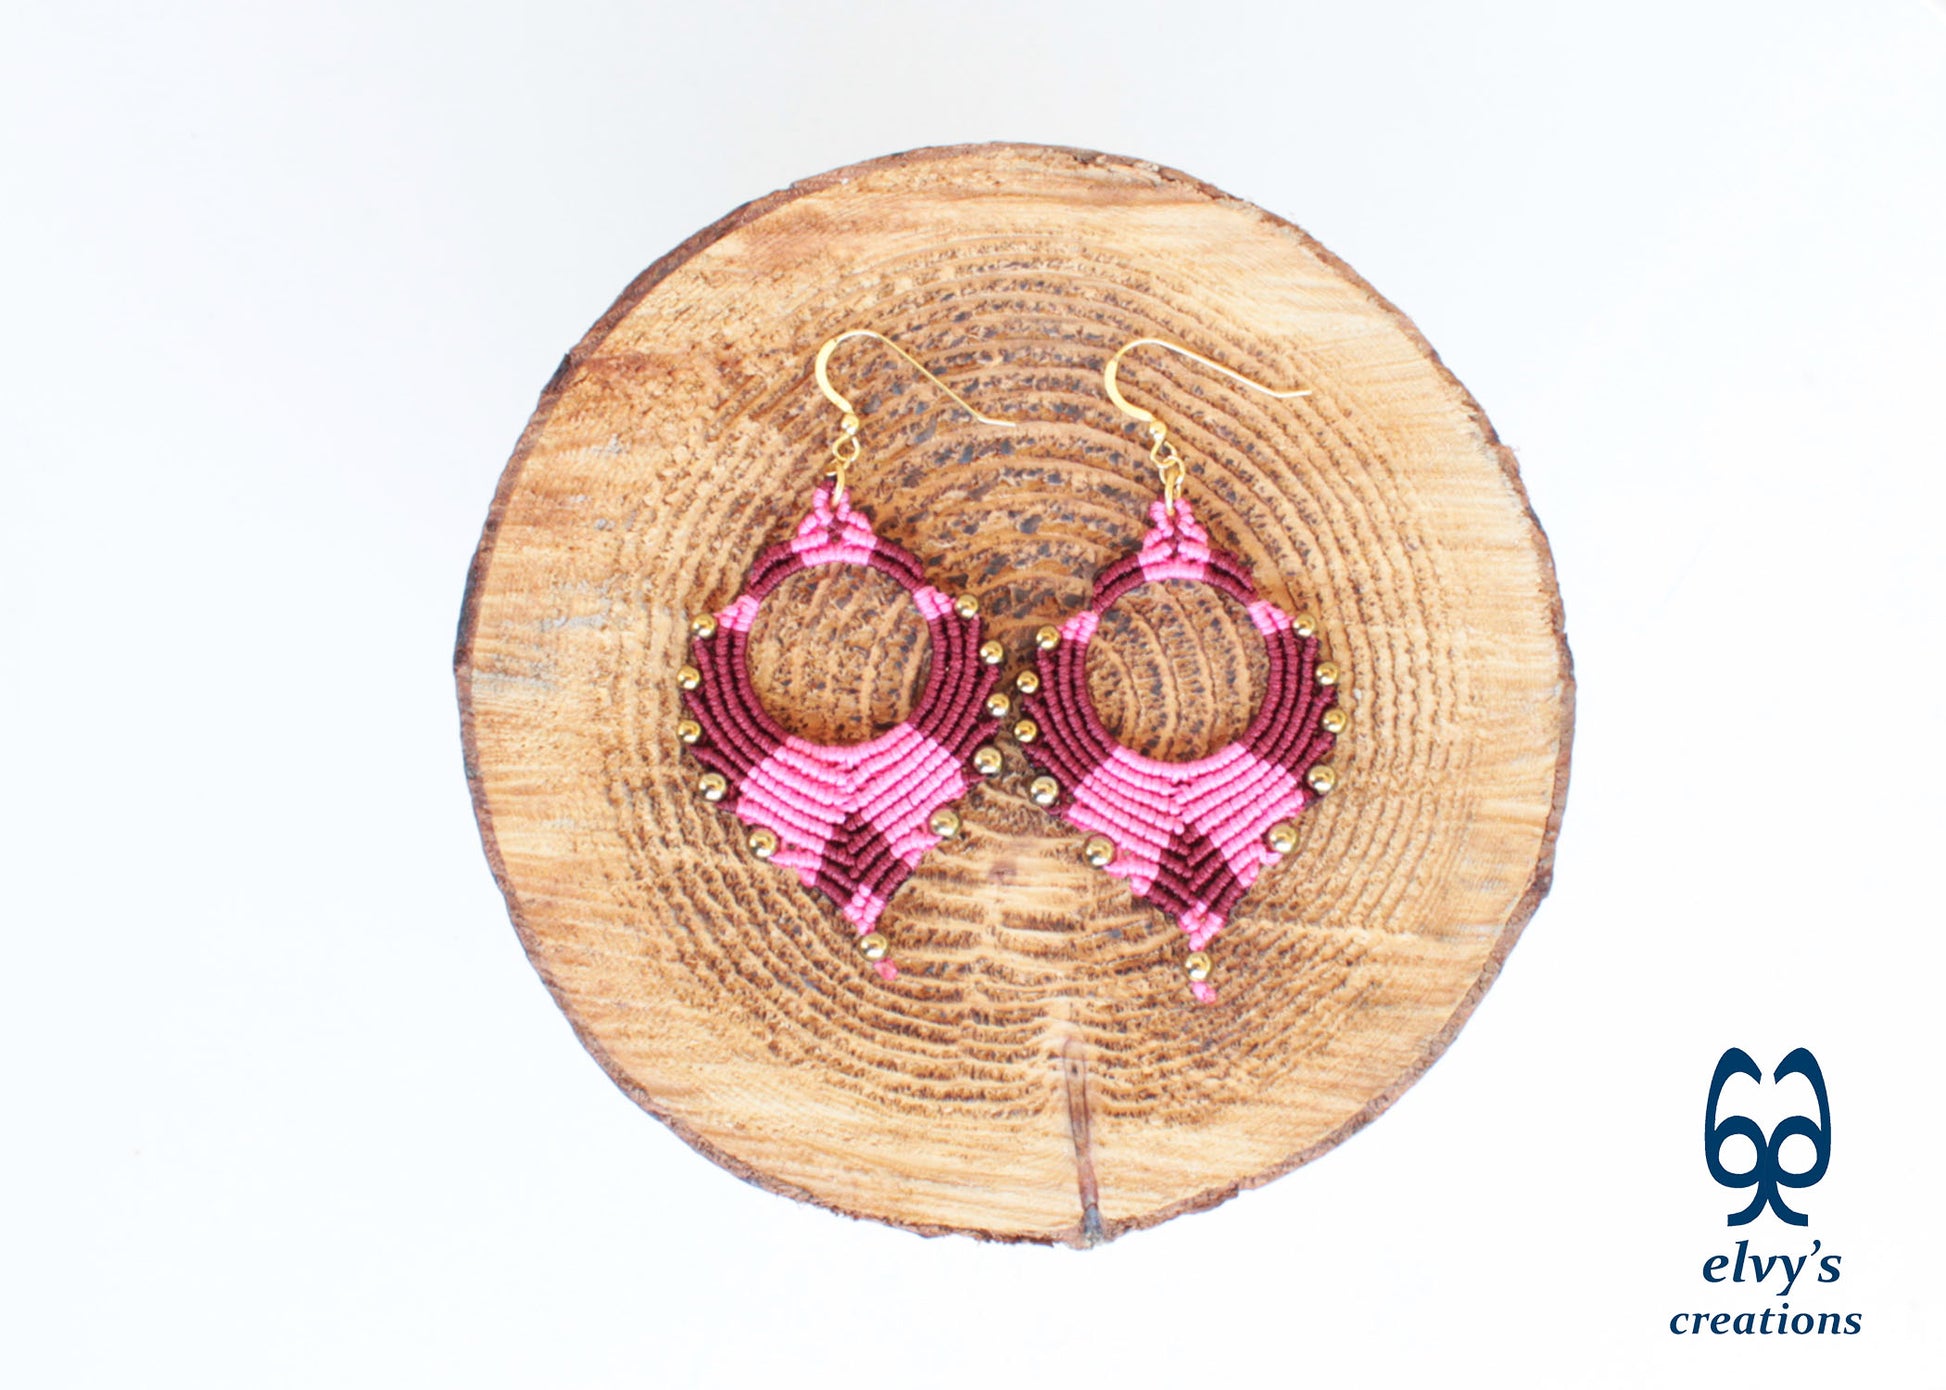 Pink Macrame Earrings Gold Hematite Gemstones Silver Hoop Earrings